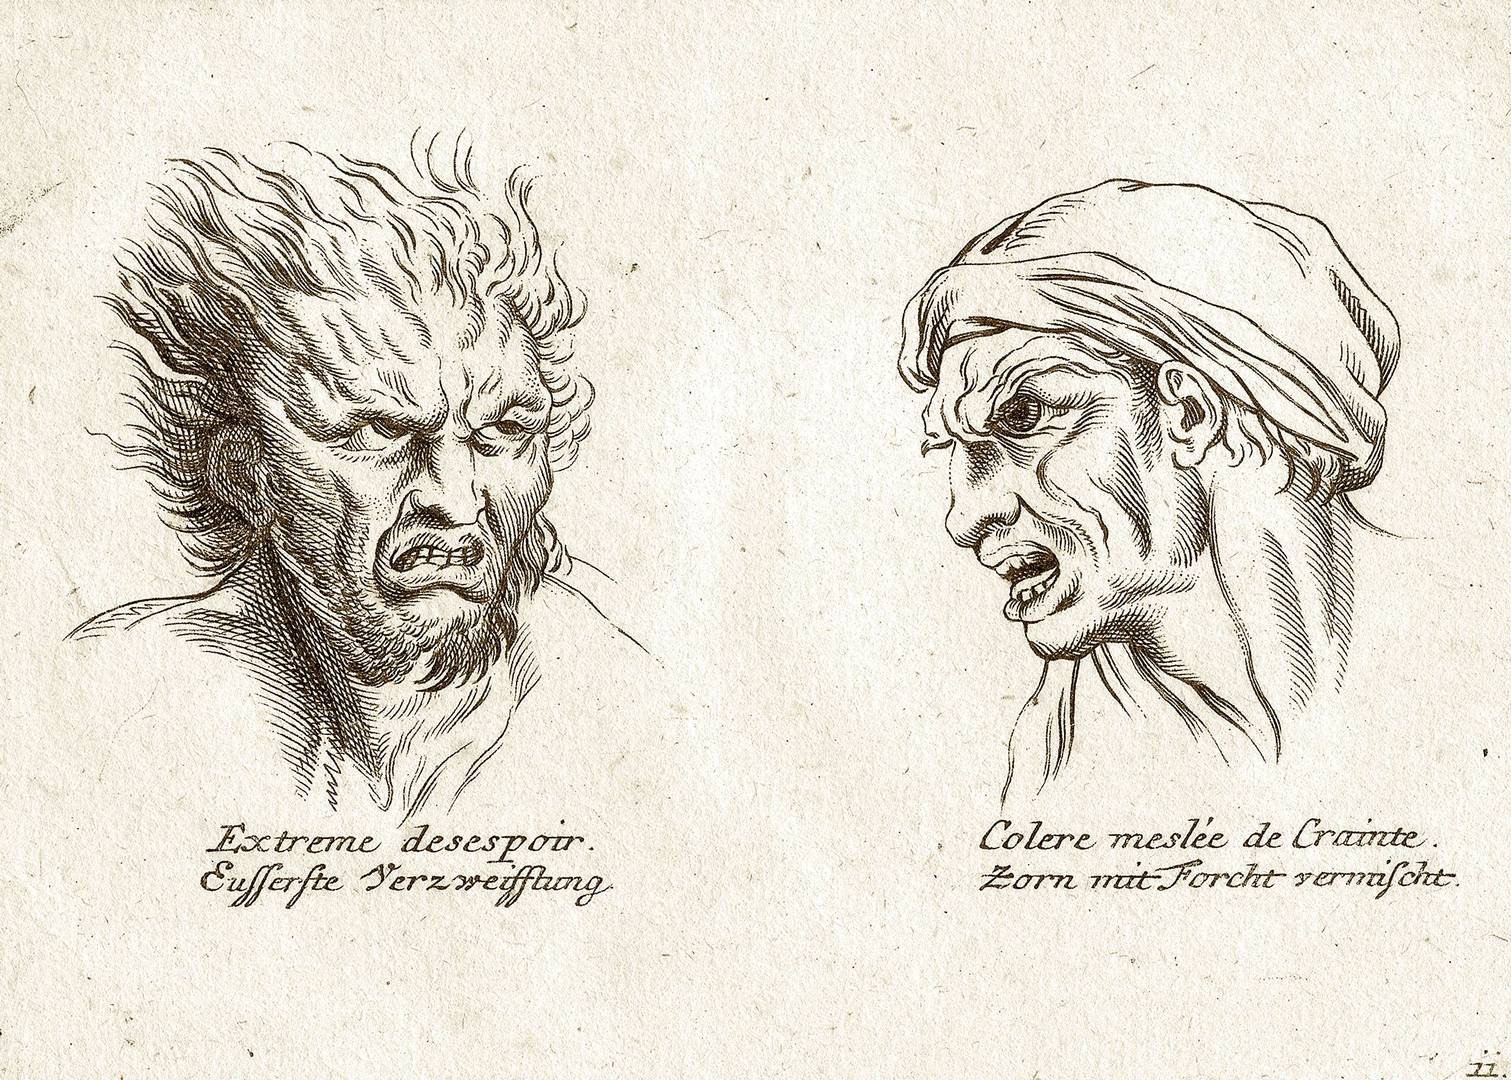 Эскизы художника, которые показывают два типа экстремальных эмоций; правая иллюстрация показывает ярость, смешанную со страхом